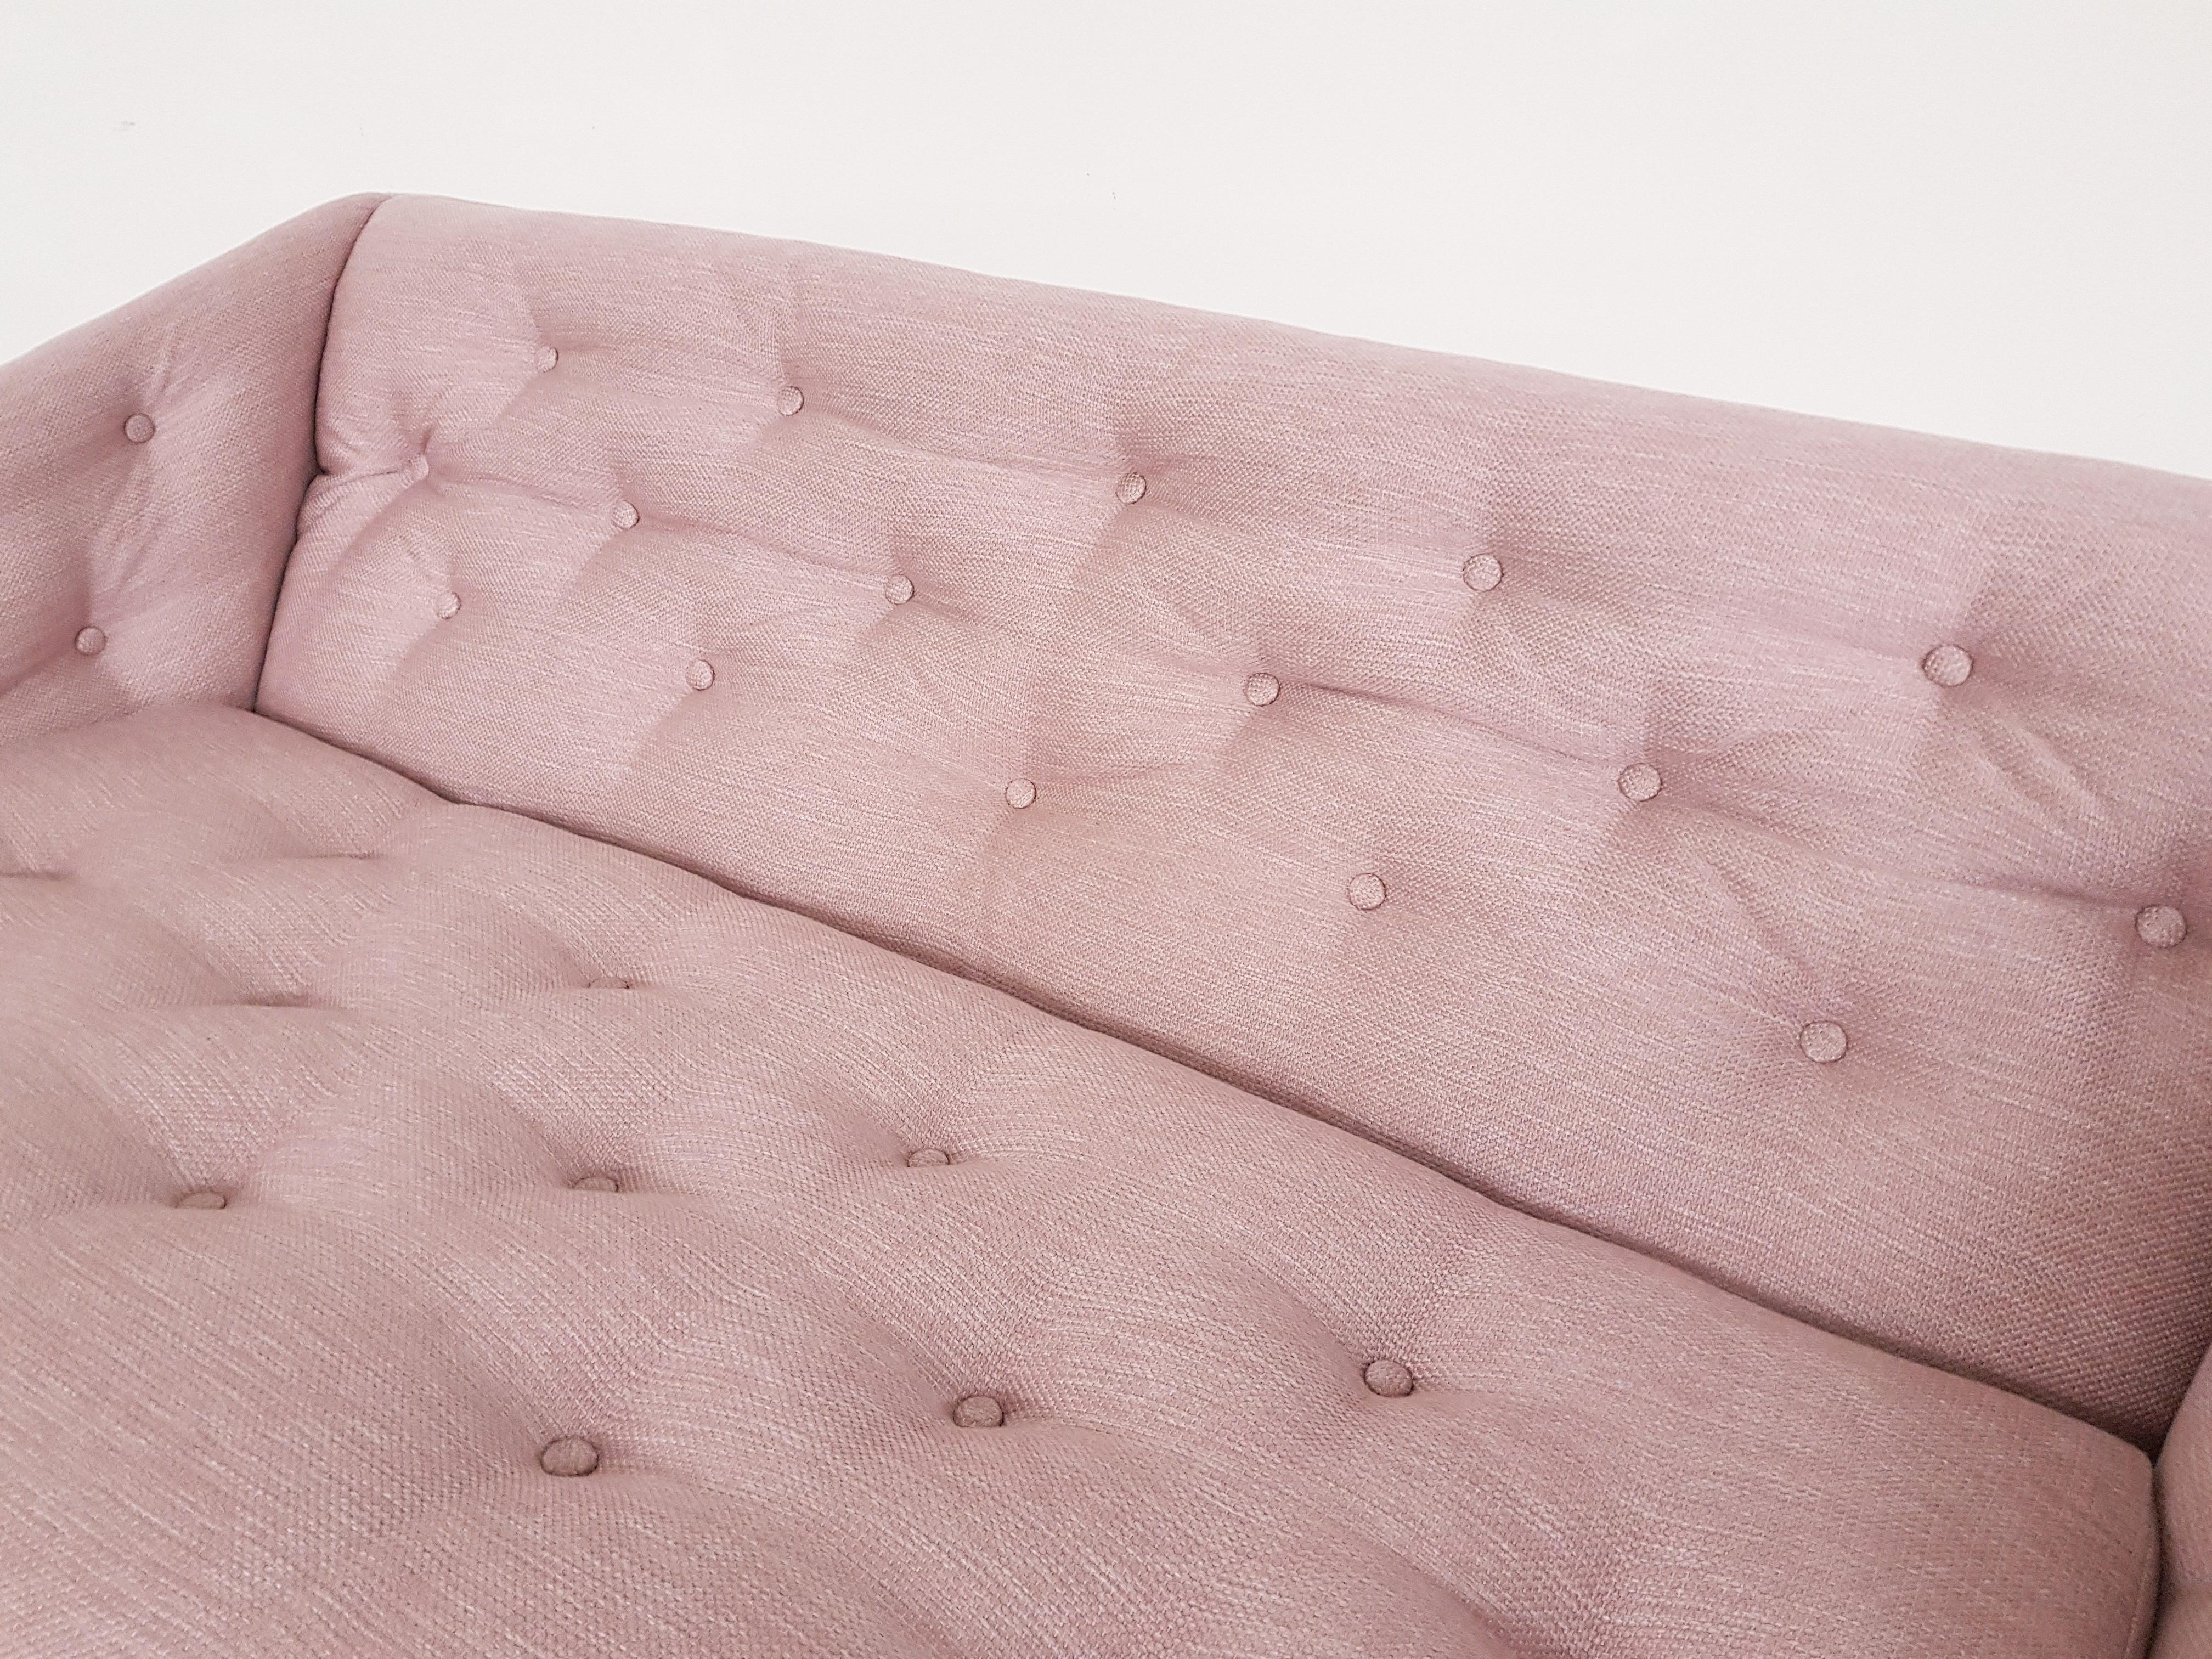 20th Century Pink Sofa by Geoffrey Harcourt for Artifort C610, Dutch Design 1969